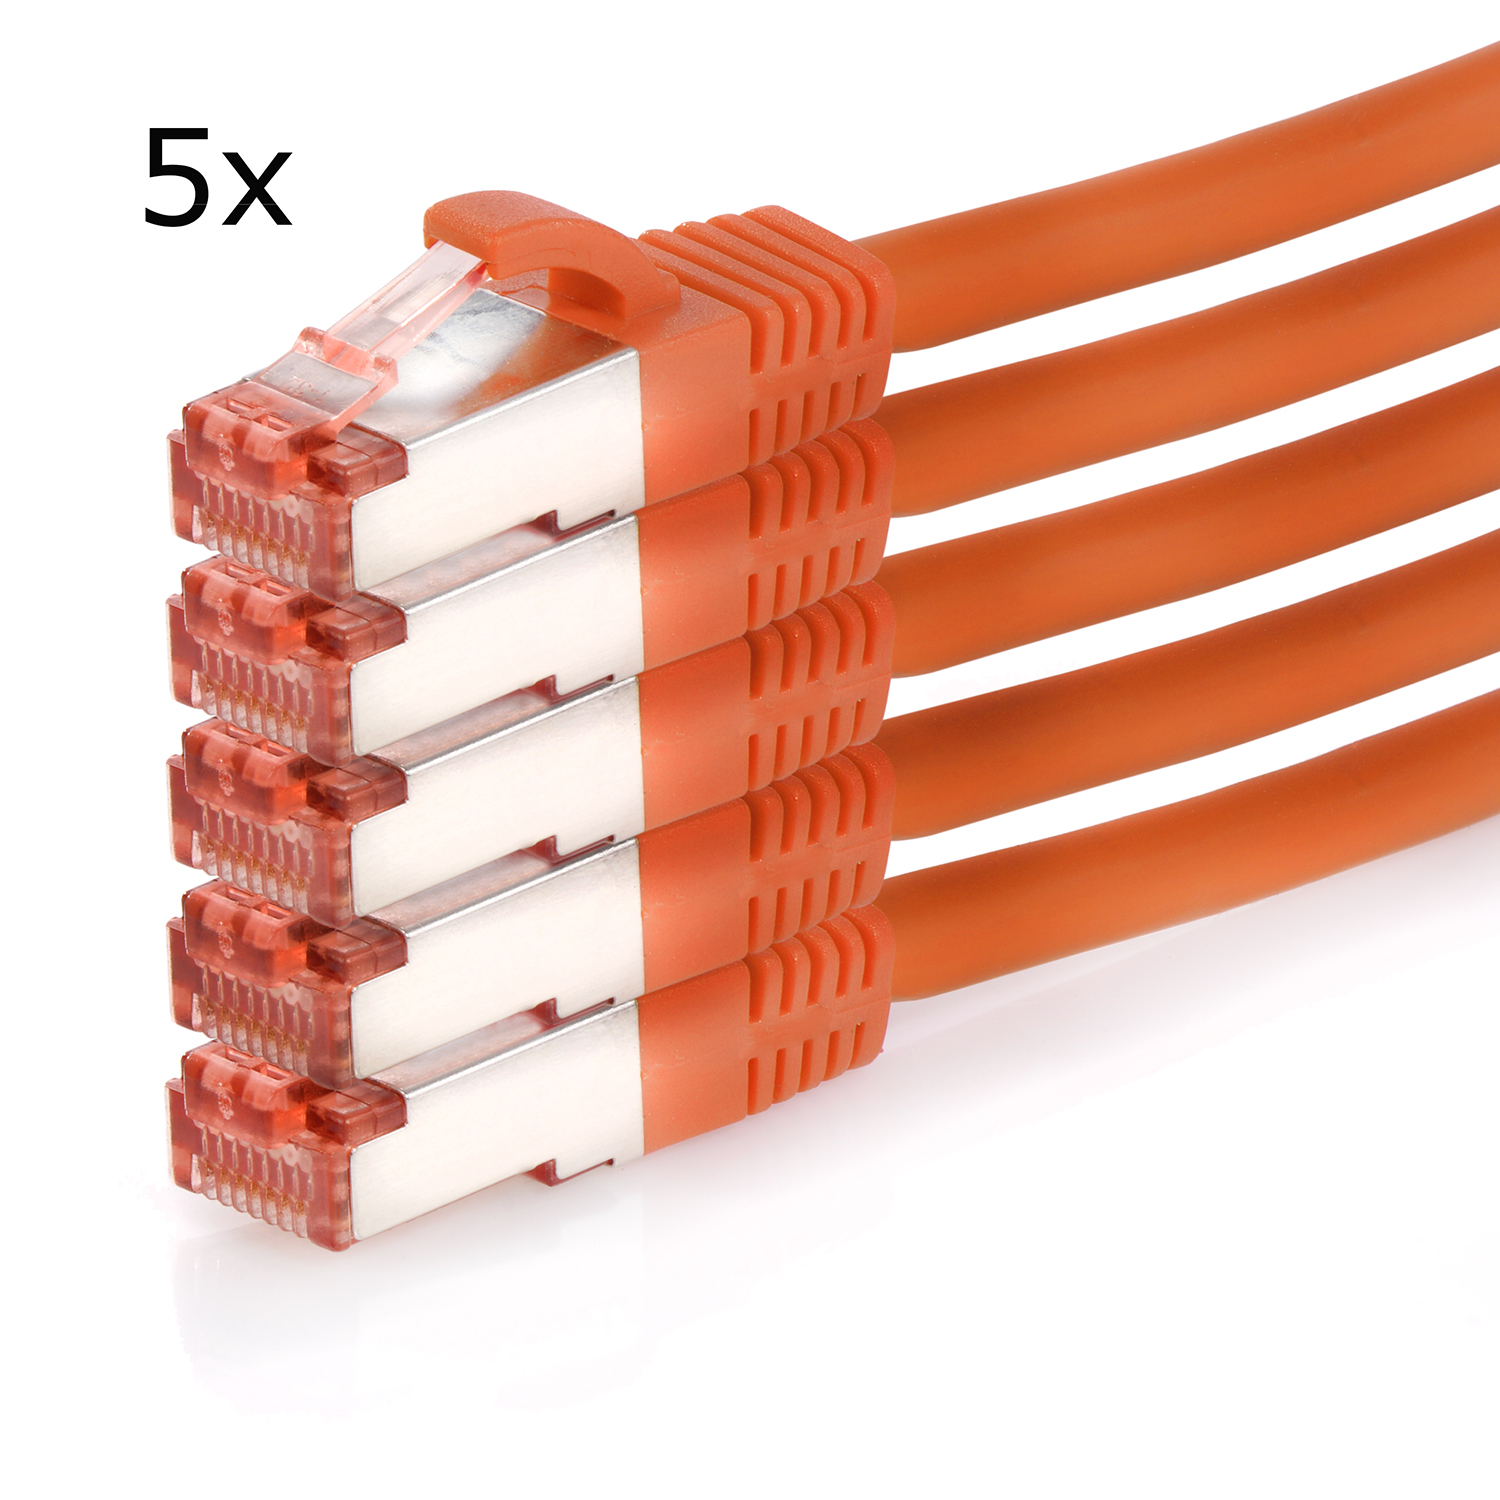 1,5m TPFNET 1,5 1000Mbit, Netzwerkkabel, S/FTP Patchkabel Pack / 5er Netzwerkkabel orange, m